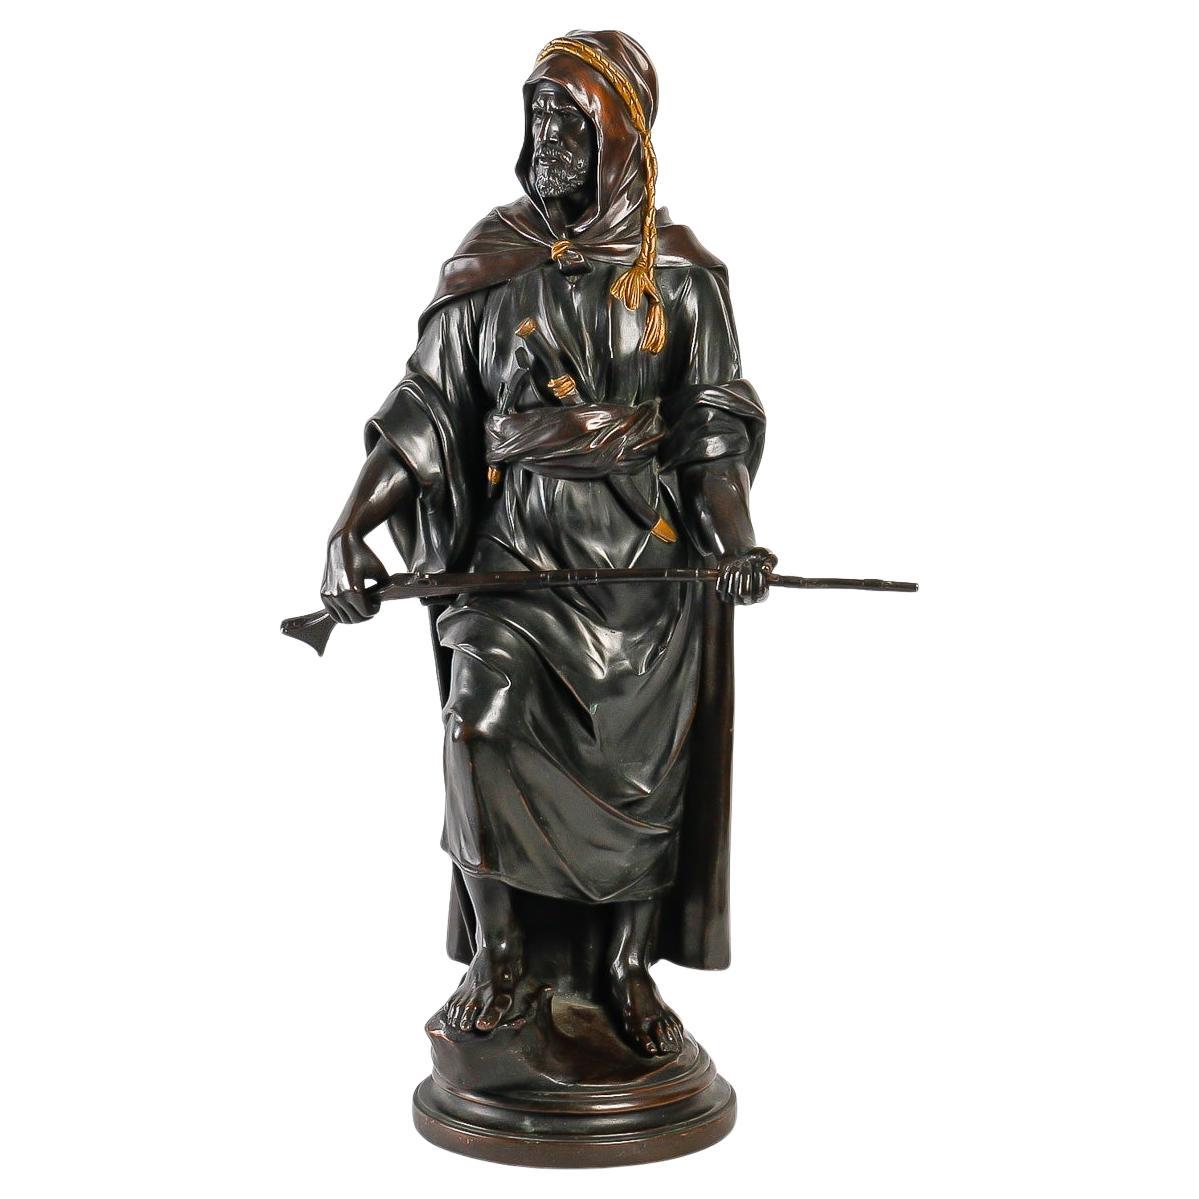 Bronzeskulptur von Franz Bergmann, „Der Sultan“, orientalische Kunst.